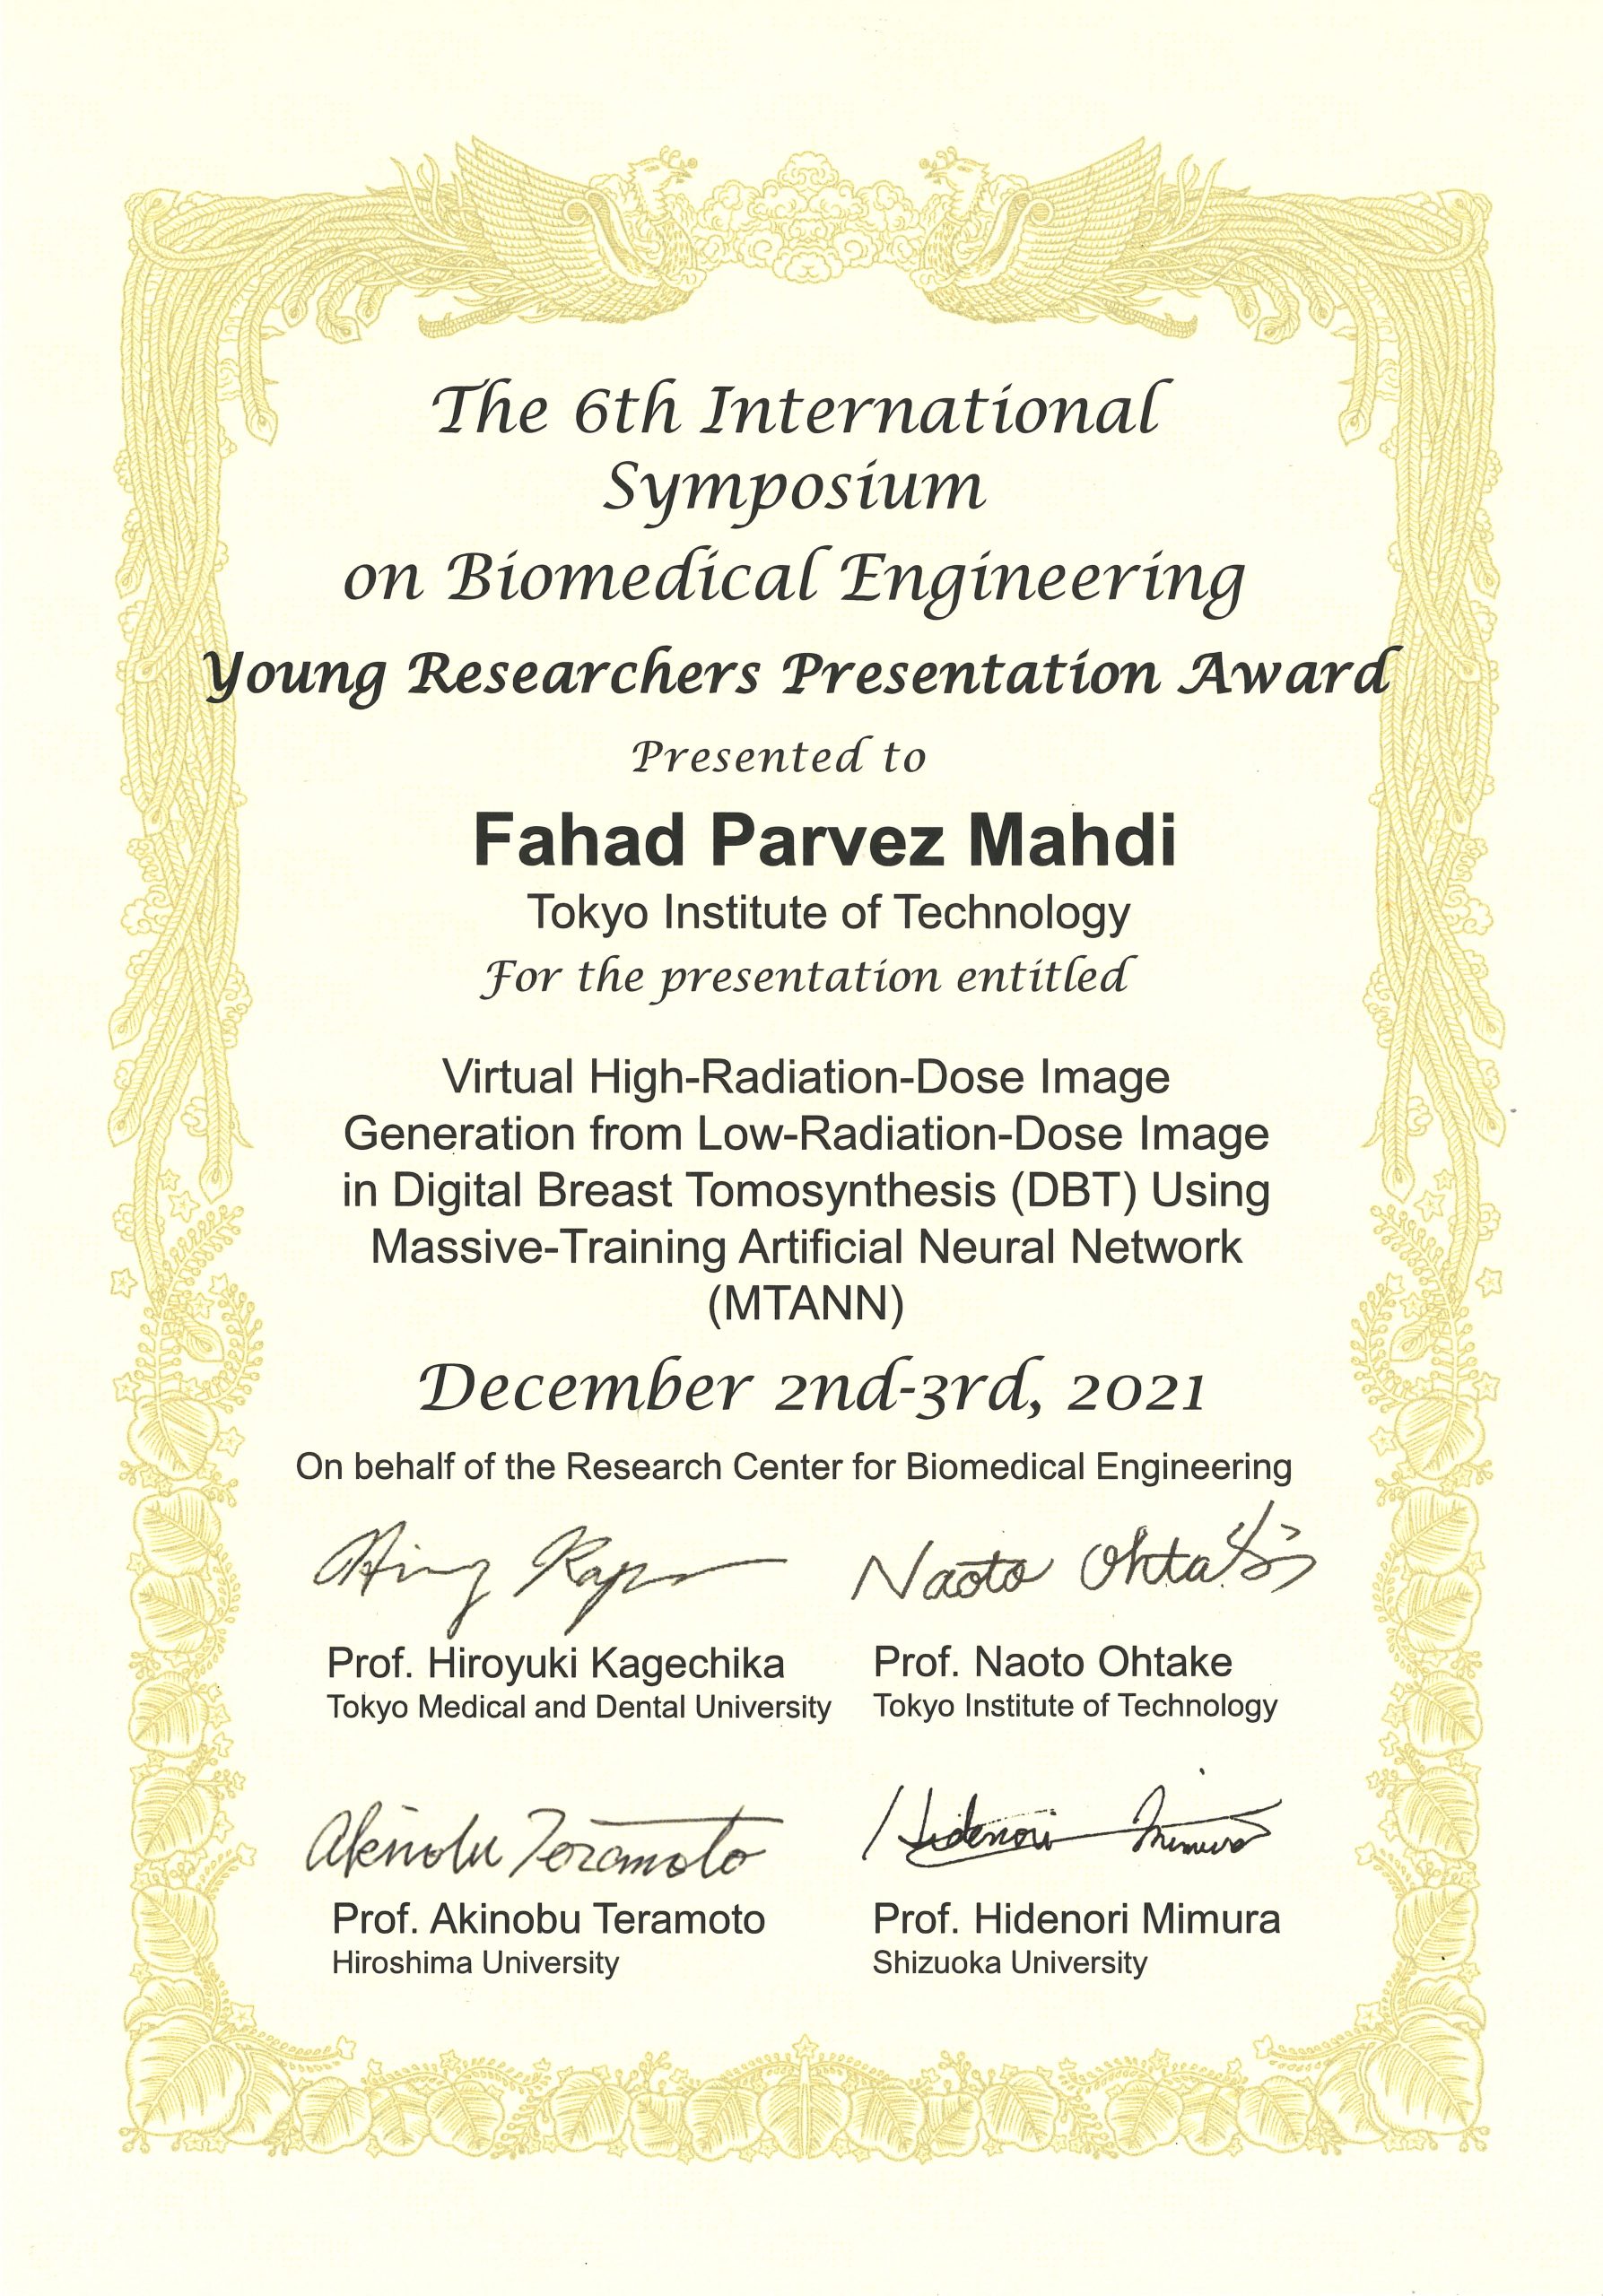 Dr. Mahdi has recieved an award from ISBE2021